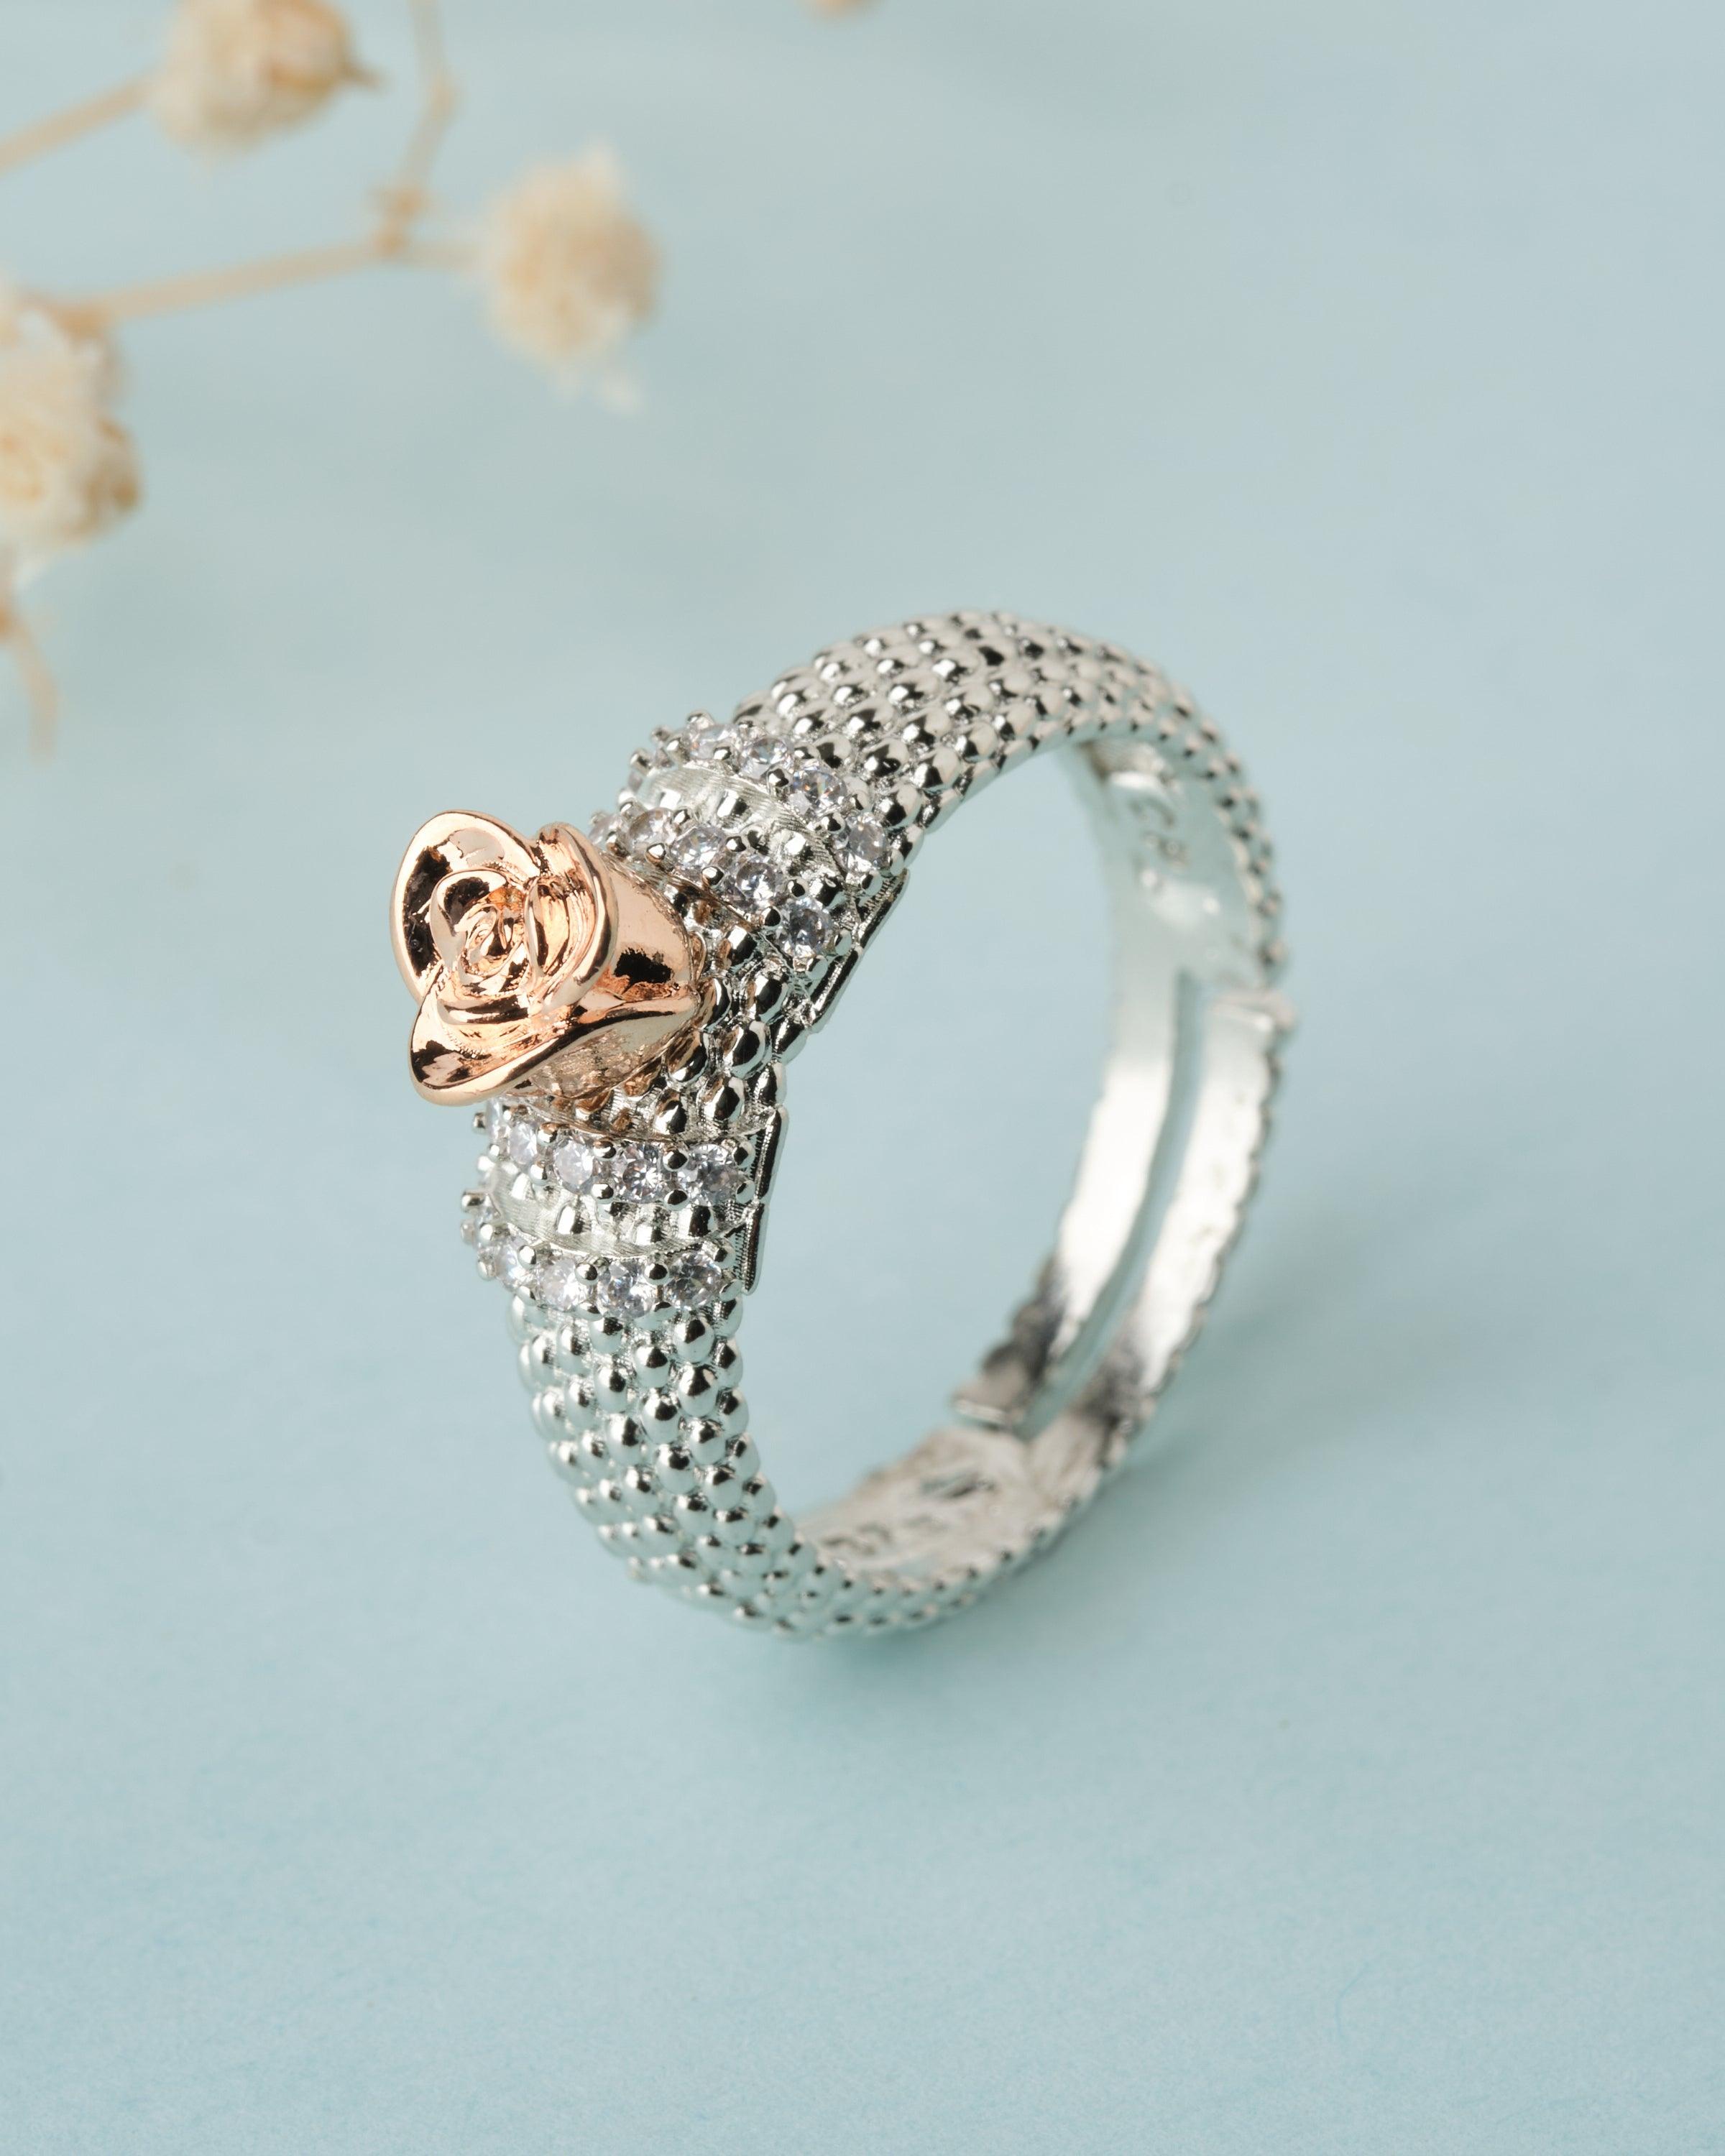 Astonishing Diamond Rings To Make Beautiful Statements - Grand diamonds Blog